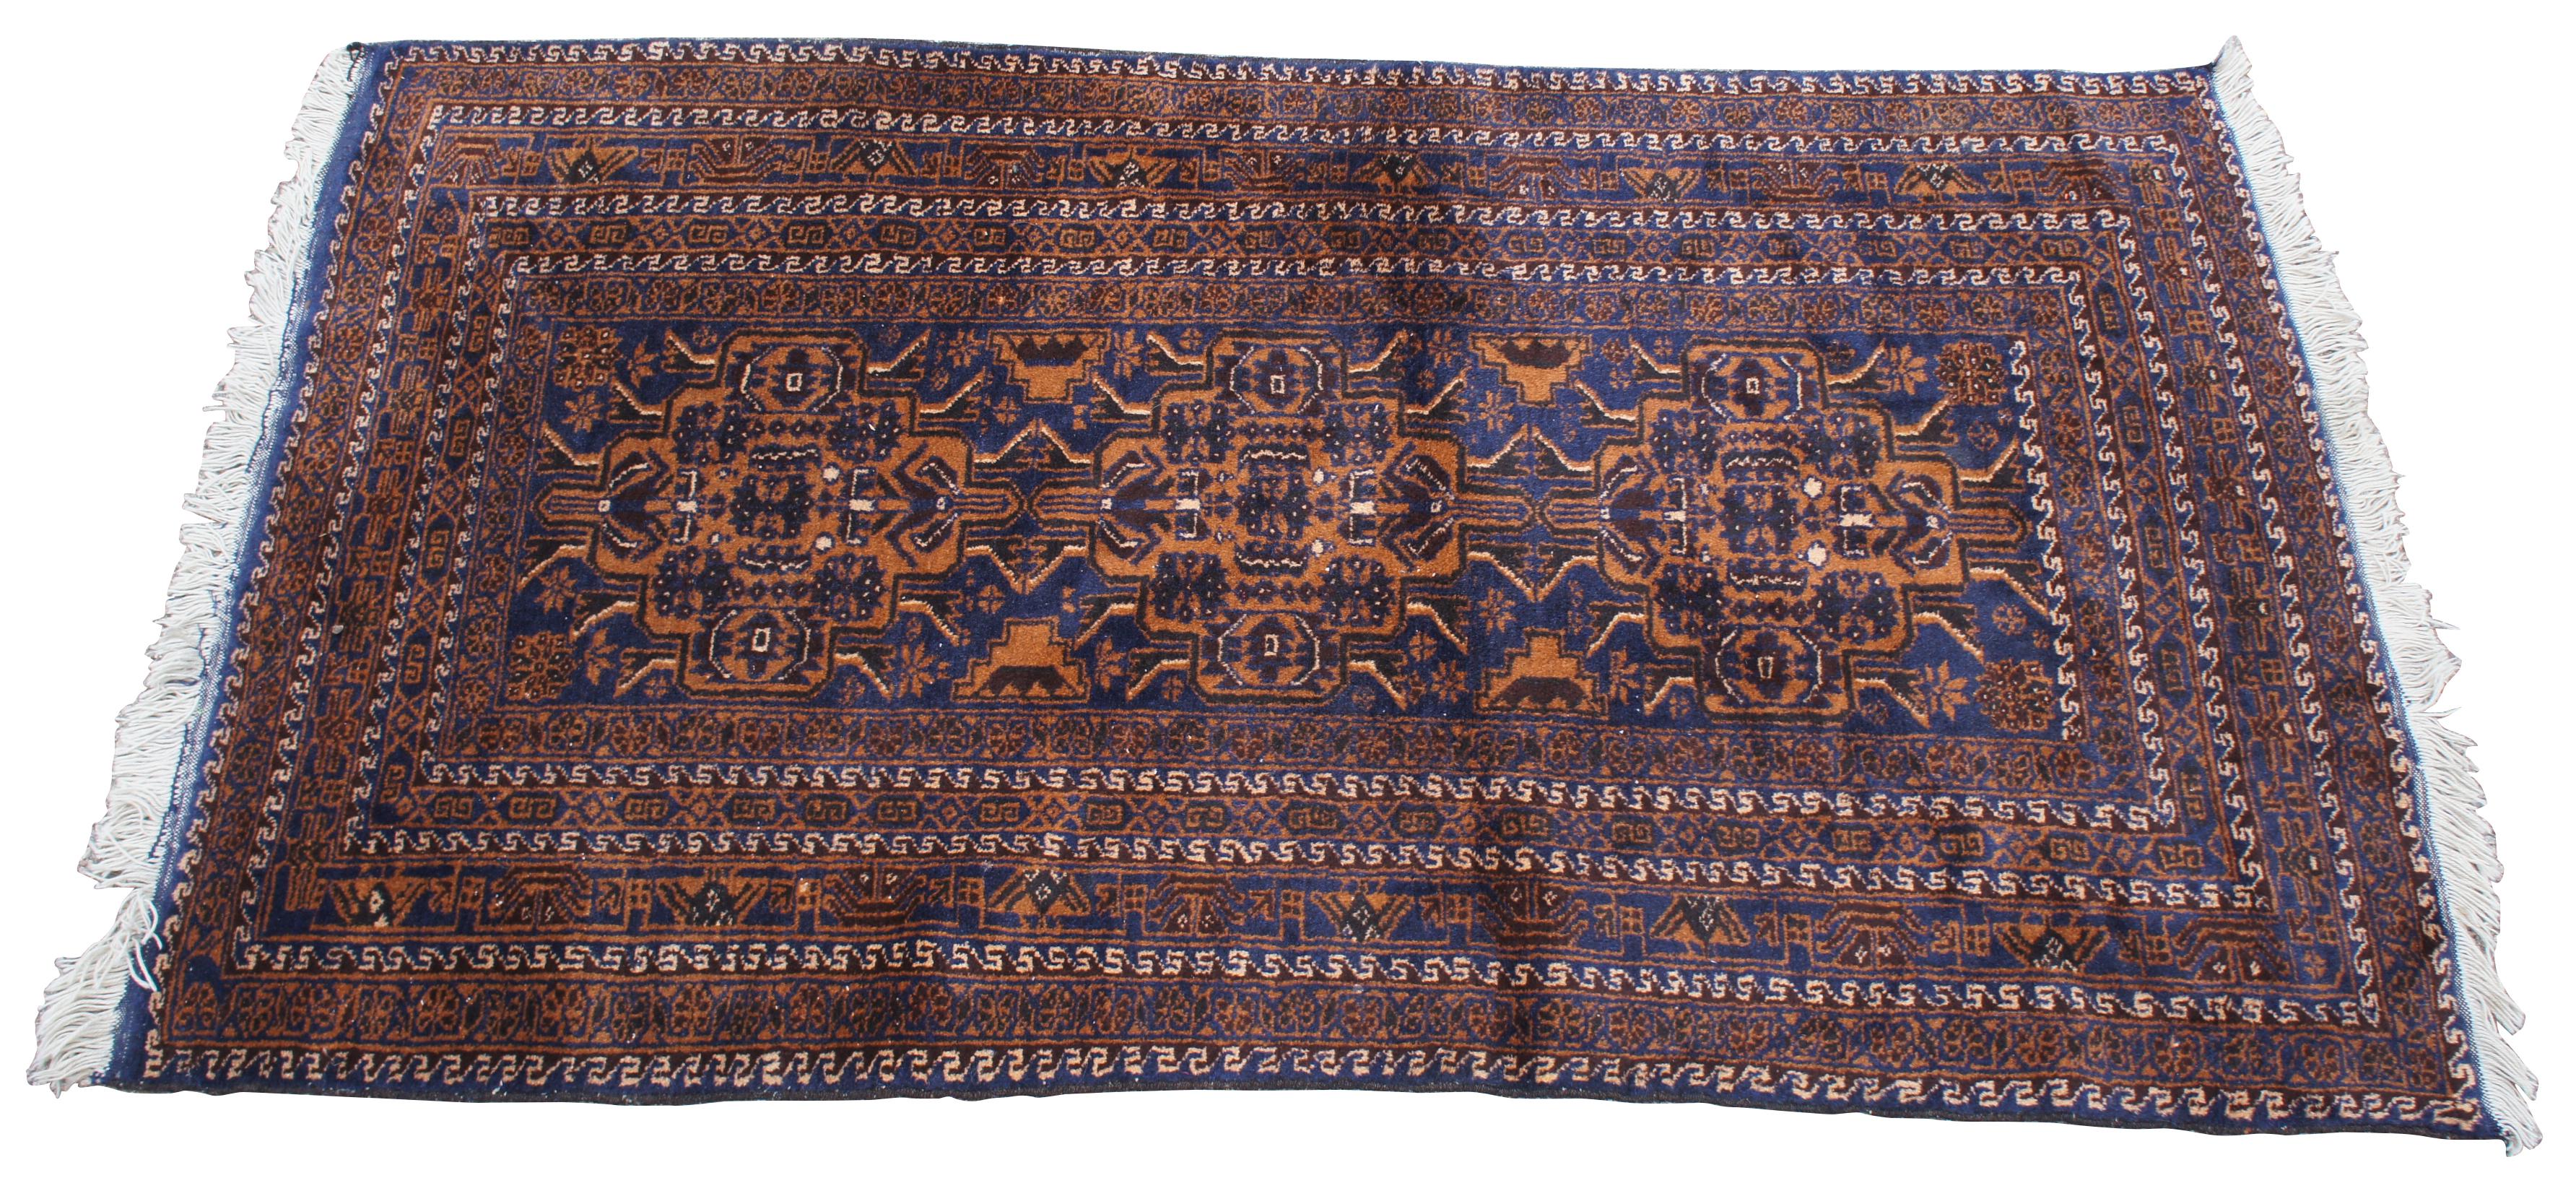 Persischer Belutsch-Wollteppich im Vintage-Look. Geometrisches, sich wiederholendes Muster mit einem Feld in Marineblau, akzentuiert mit Orange/Braun und Hellbraun. Belutschi-Teppich, auch Belutschi oder Belutschi geschrieben, Bodenbelag, der vom